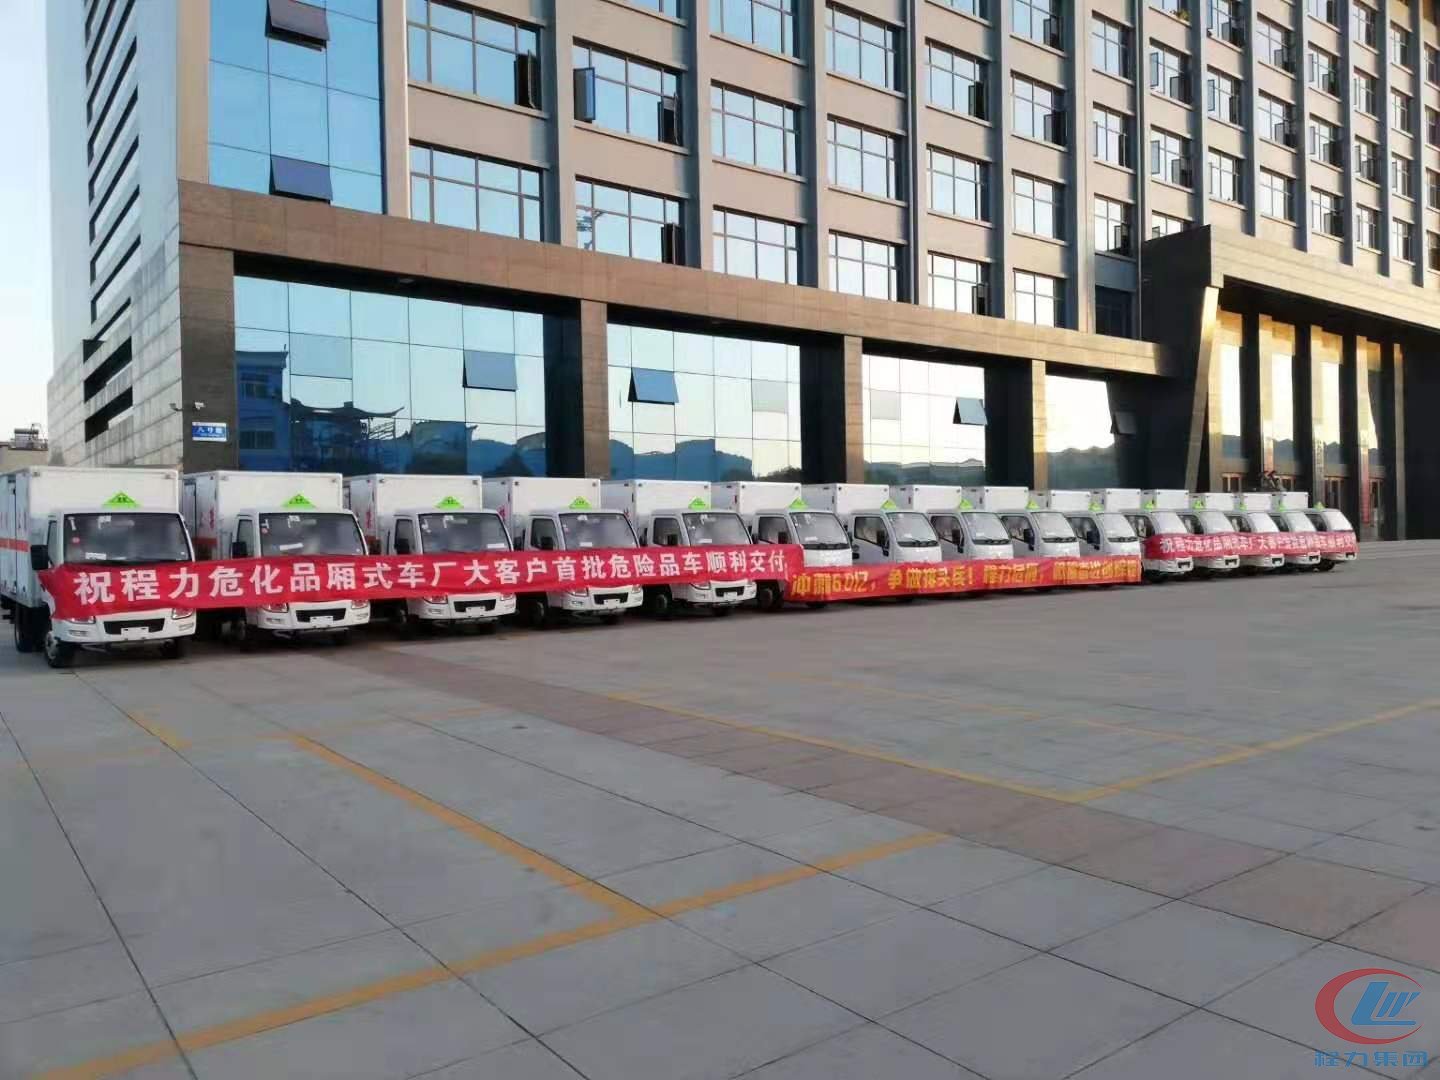 j9.com(中国区)官方网站危险品厢式车批量发车项目展示